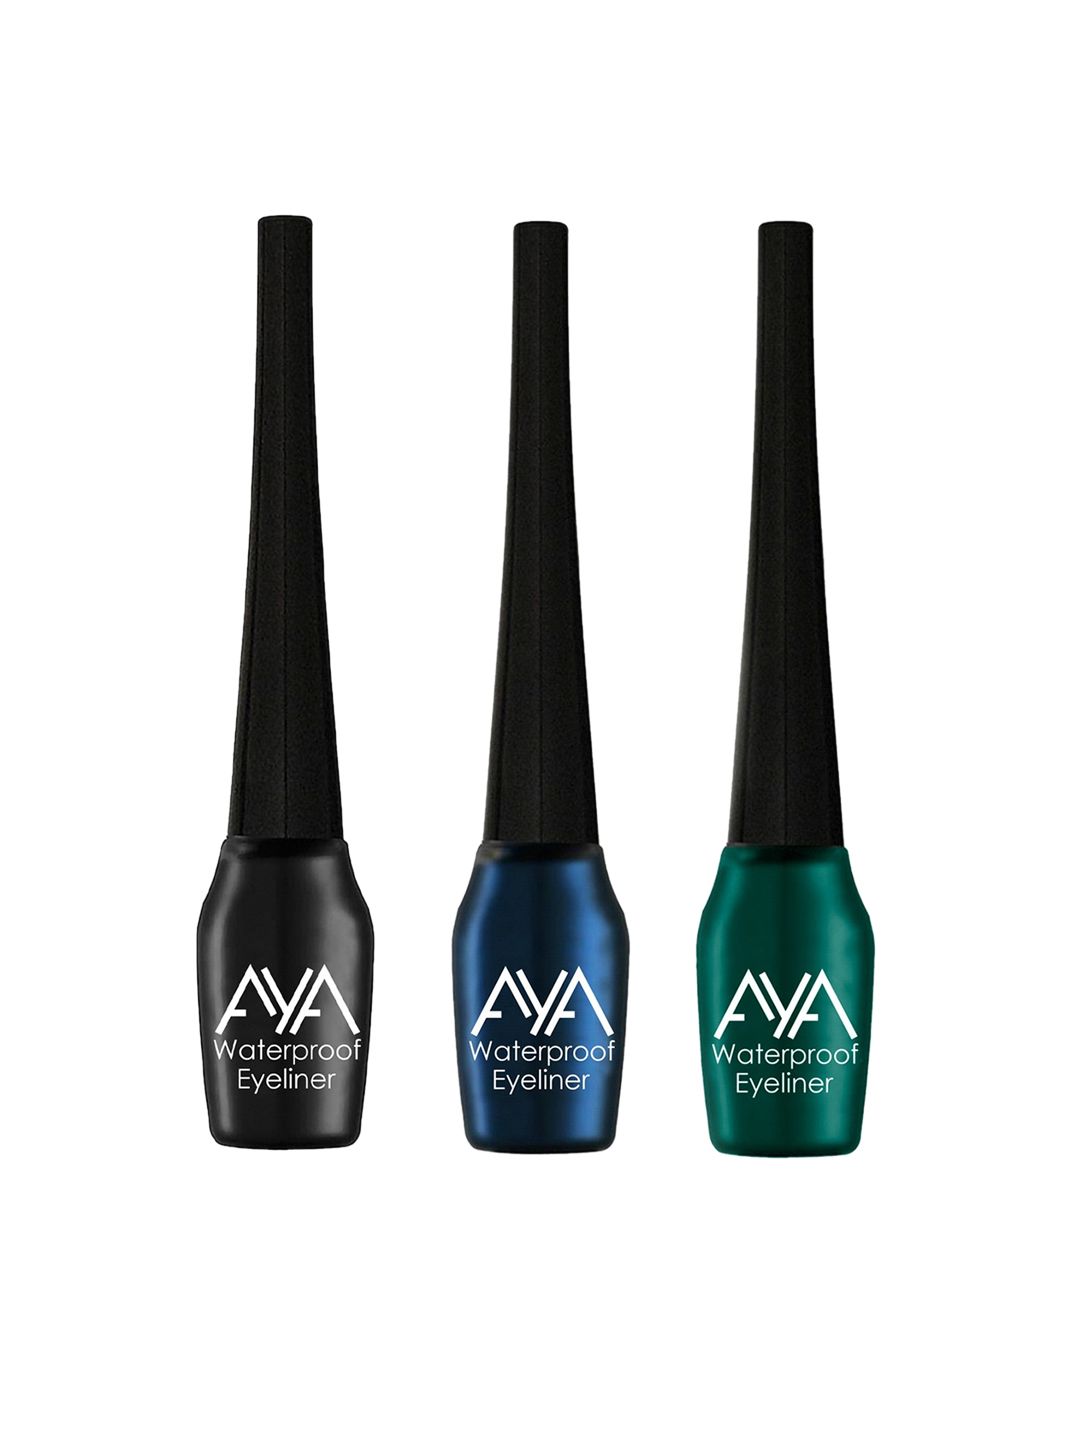 AYA Set of 3 Waterproof Eyeliner - Black, Green & Blue - 5 ml each Price in India